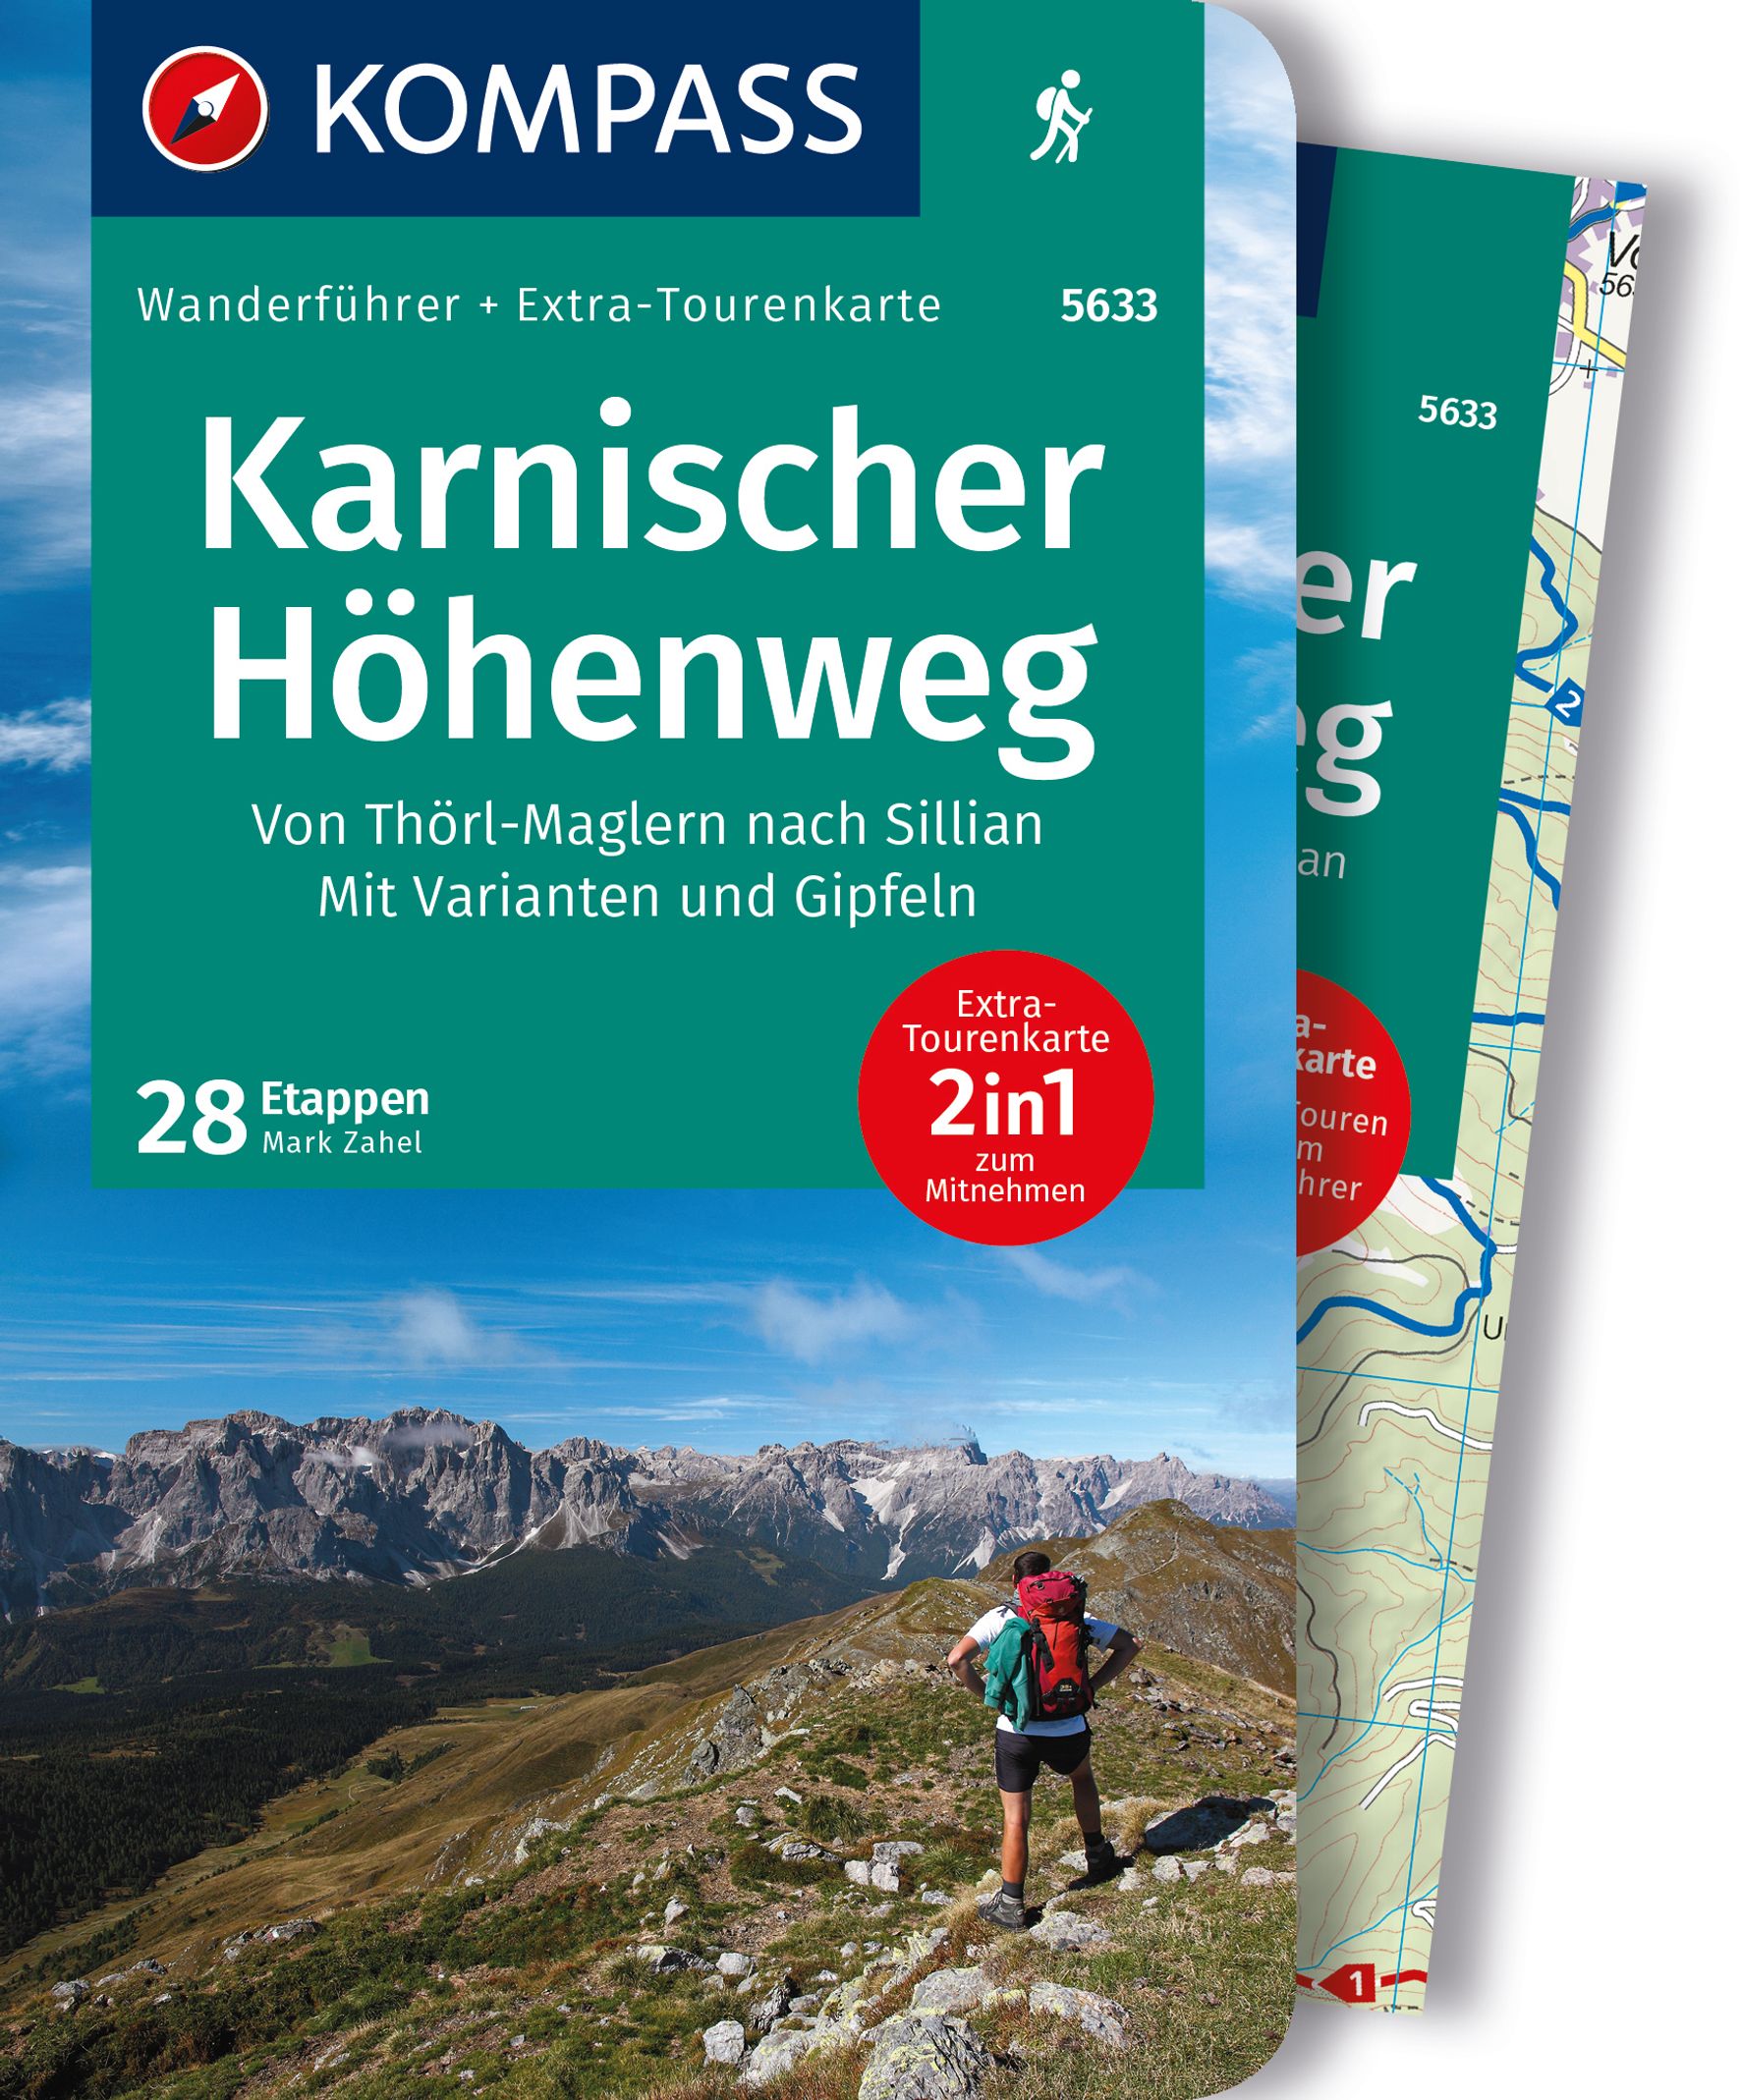 MAIRDUMONT Karnischer Höhenweg, Von Thörl-Maglern nach Sillian, Mit Varianten und Gipfeln, 28 Touren mit Extra-Tourenkarte